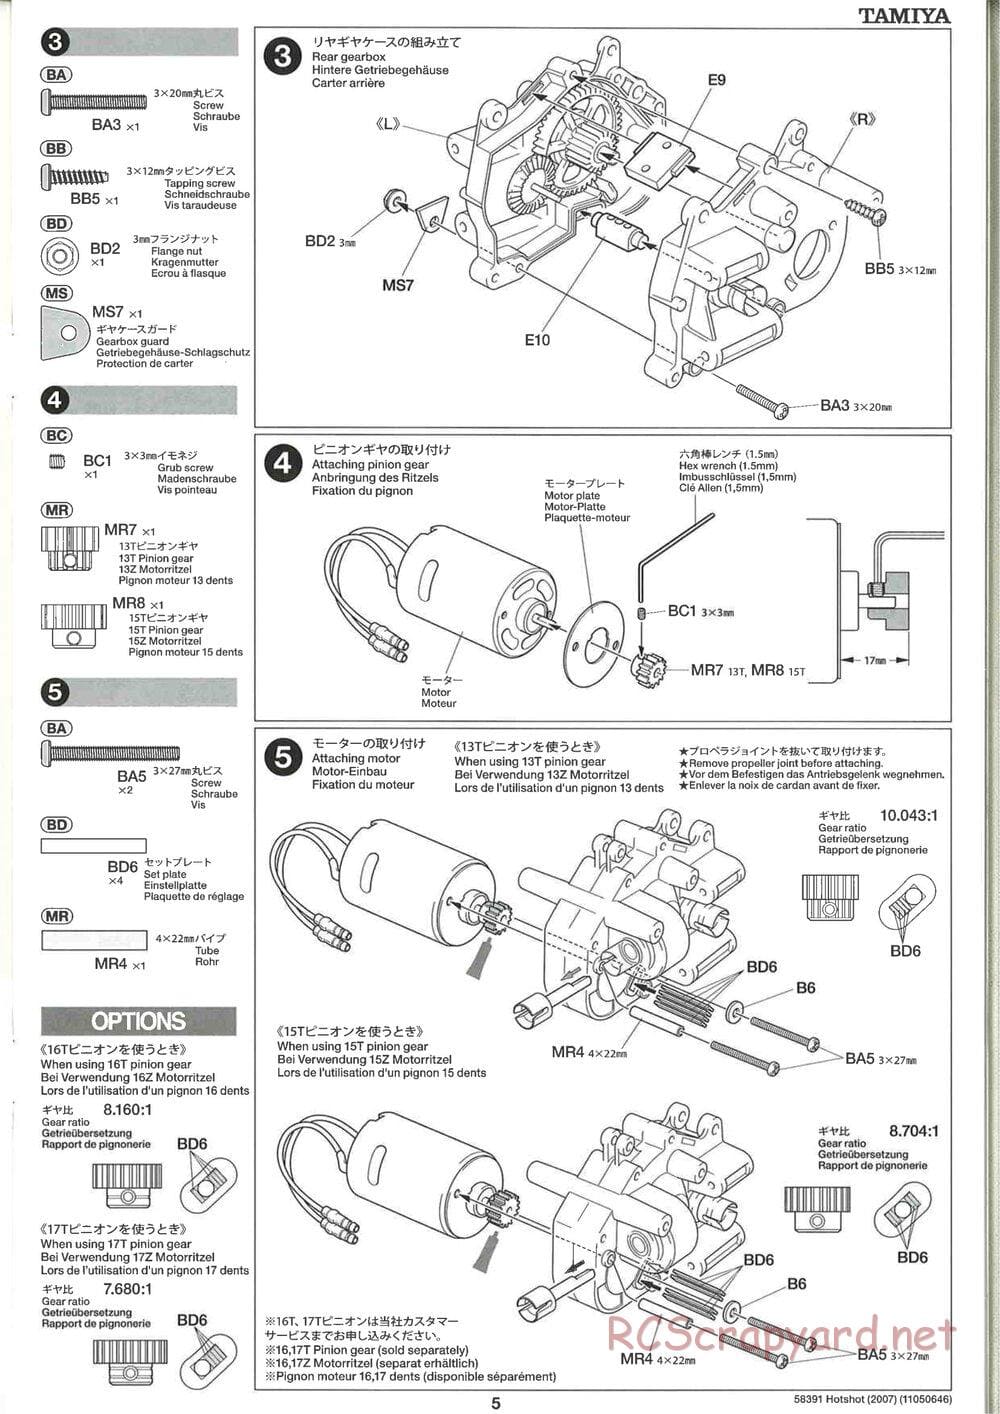 Tamiya - Hotshot - 2007 - HS Chassis - Manual - Page 5